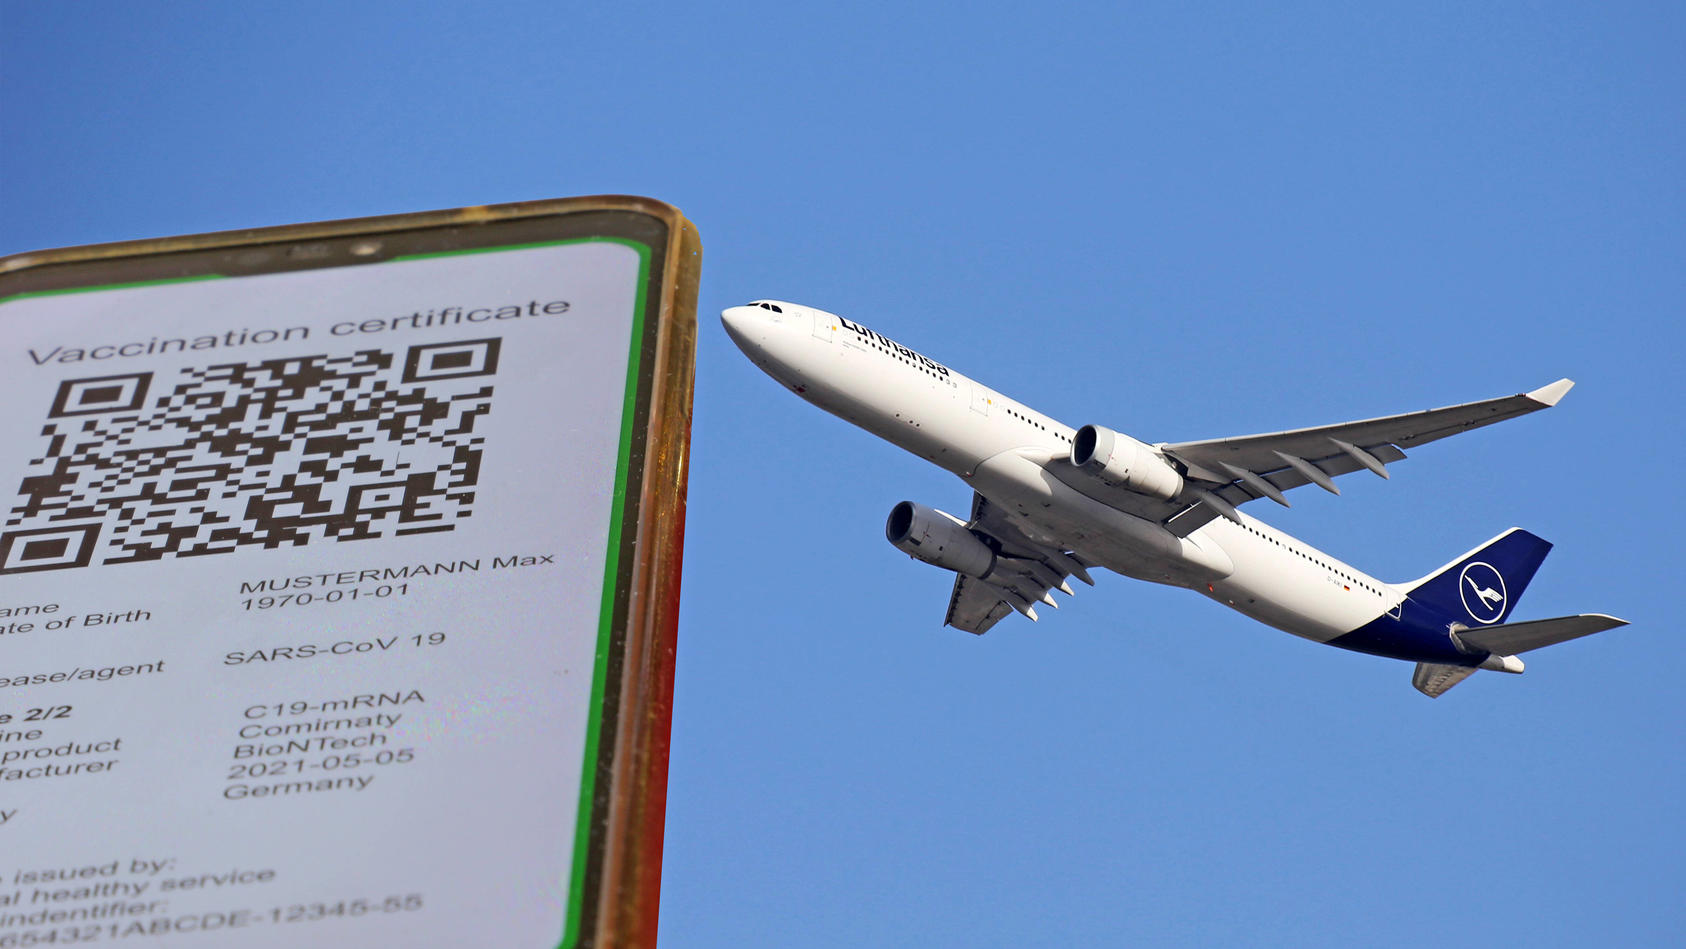  Symbolbild: Digitaler Grüner Pass und eine startende Lufthansal-Maschine *** Symbolic image of a digital green passport and a Lufthansal aircraft taking off Copyright: xx